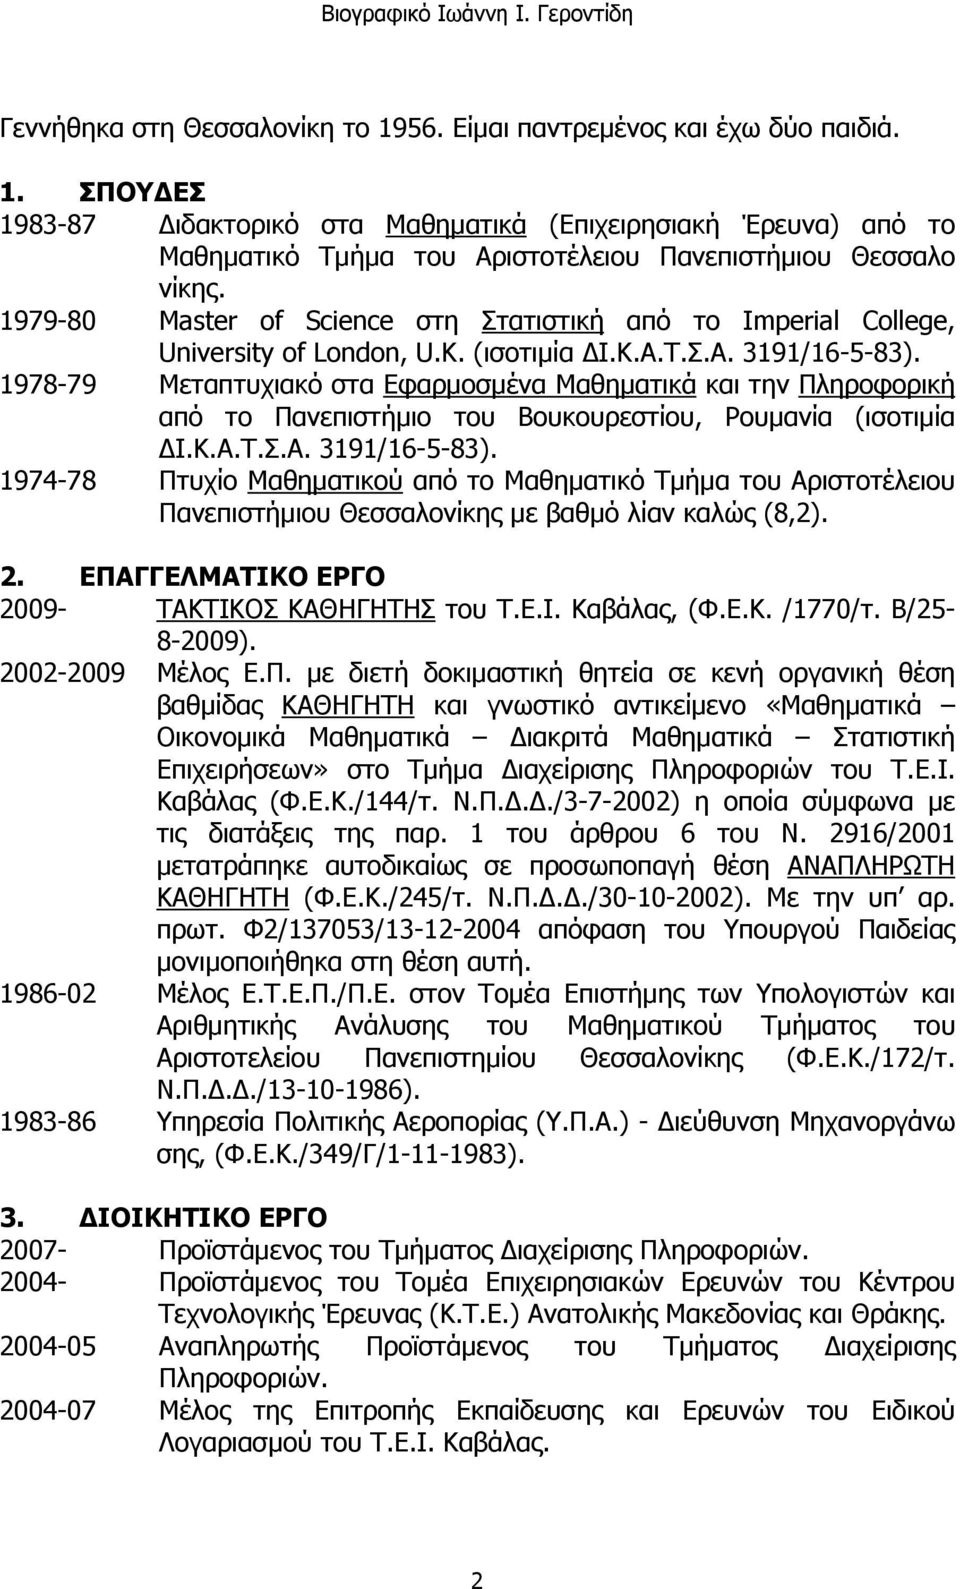 1978-79 Μεταπτυχιακό στα Εφαρμοσμένα Μαθηματικά και την Πληροφορική από το Πανεπιστήμιο του Βουκουρεστίου, Ρουμανία (ισοτιμία ΔΙ.Κ.Α.Τ.Σ.Α. 3191/16-5-83).